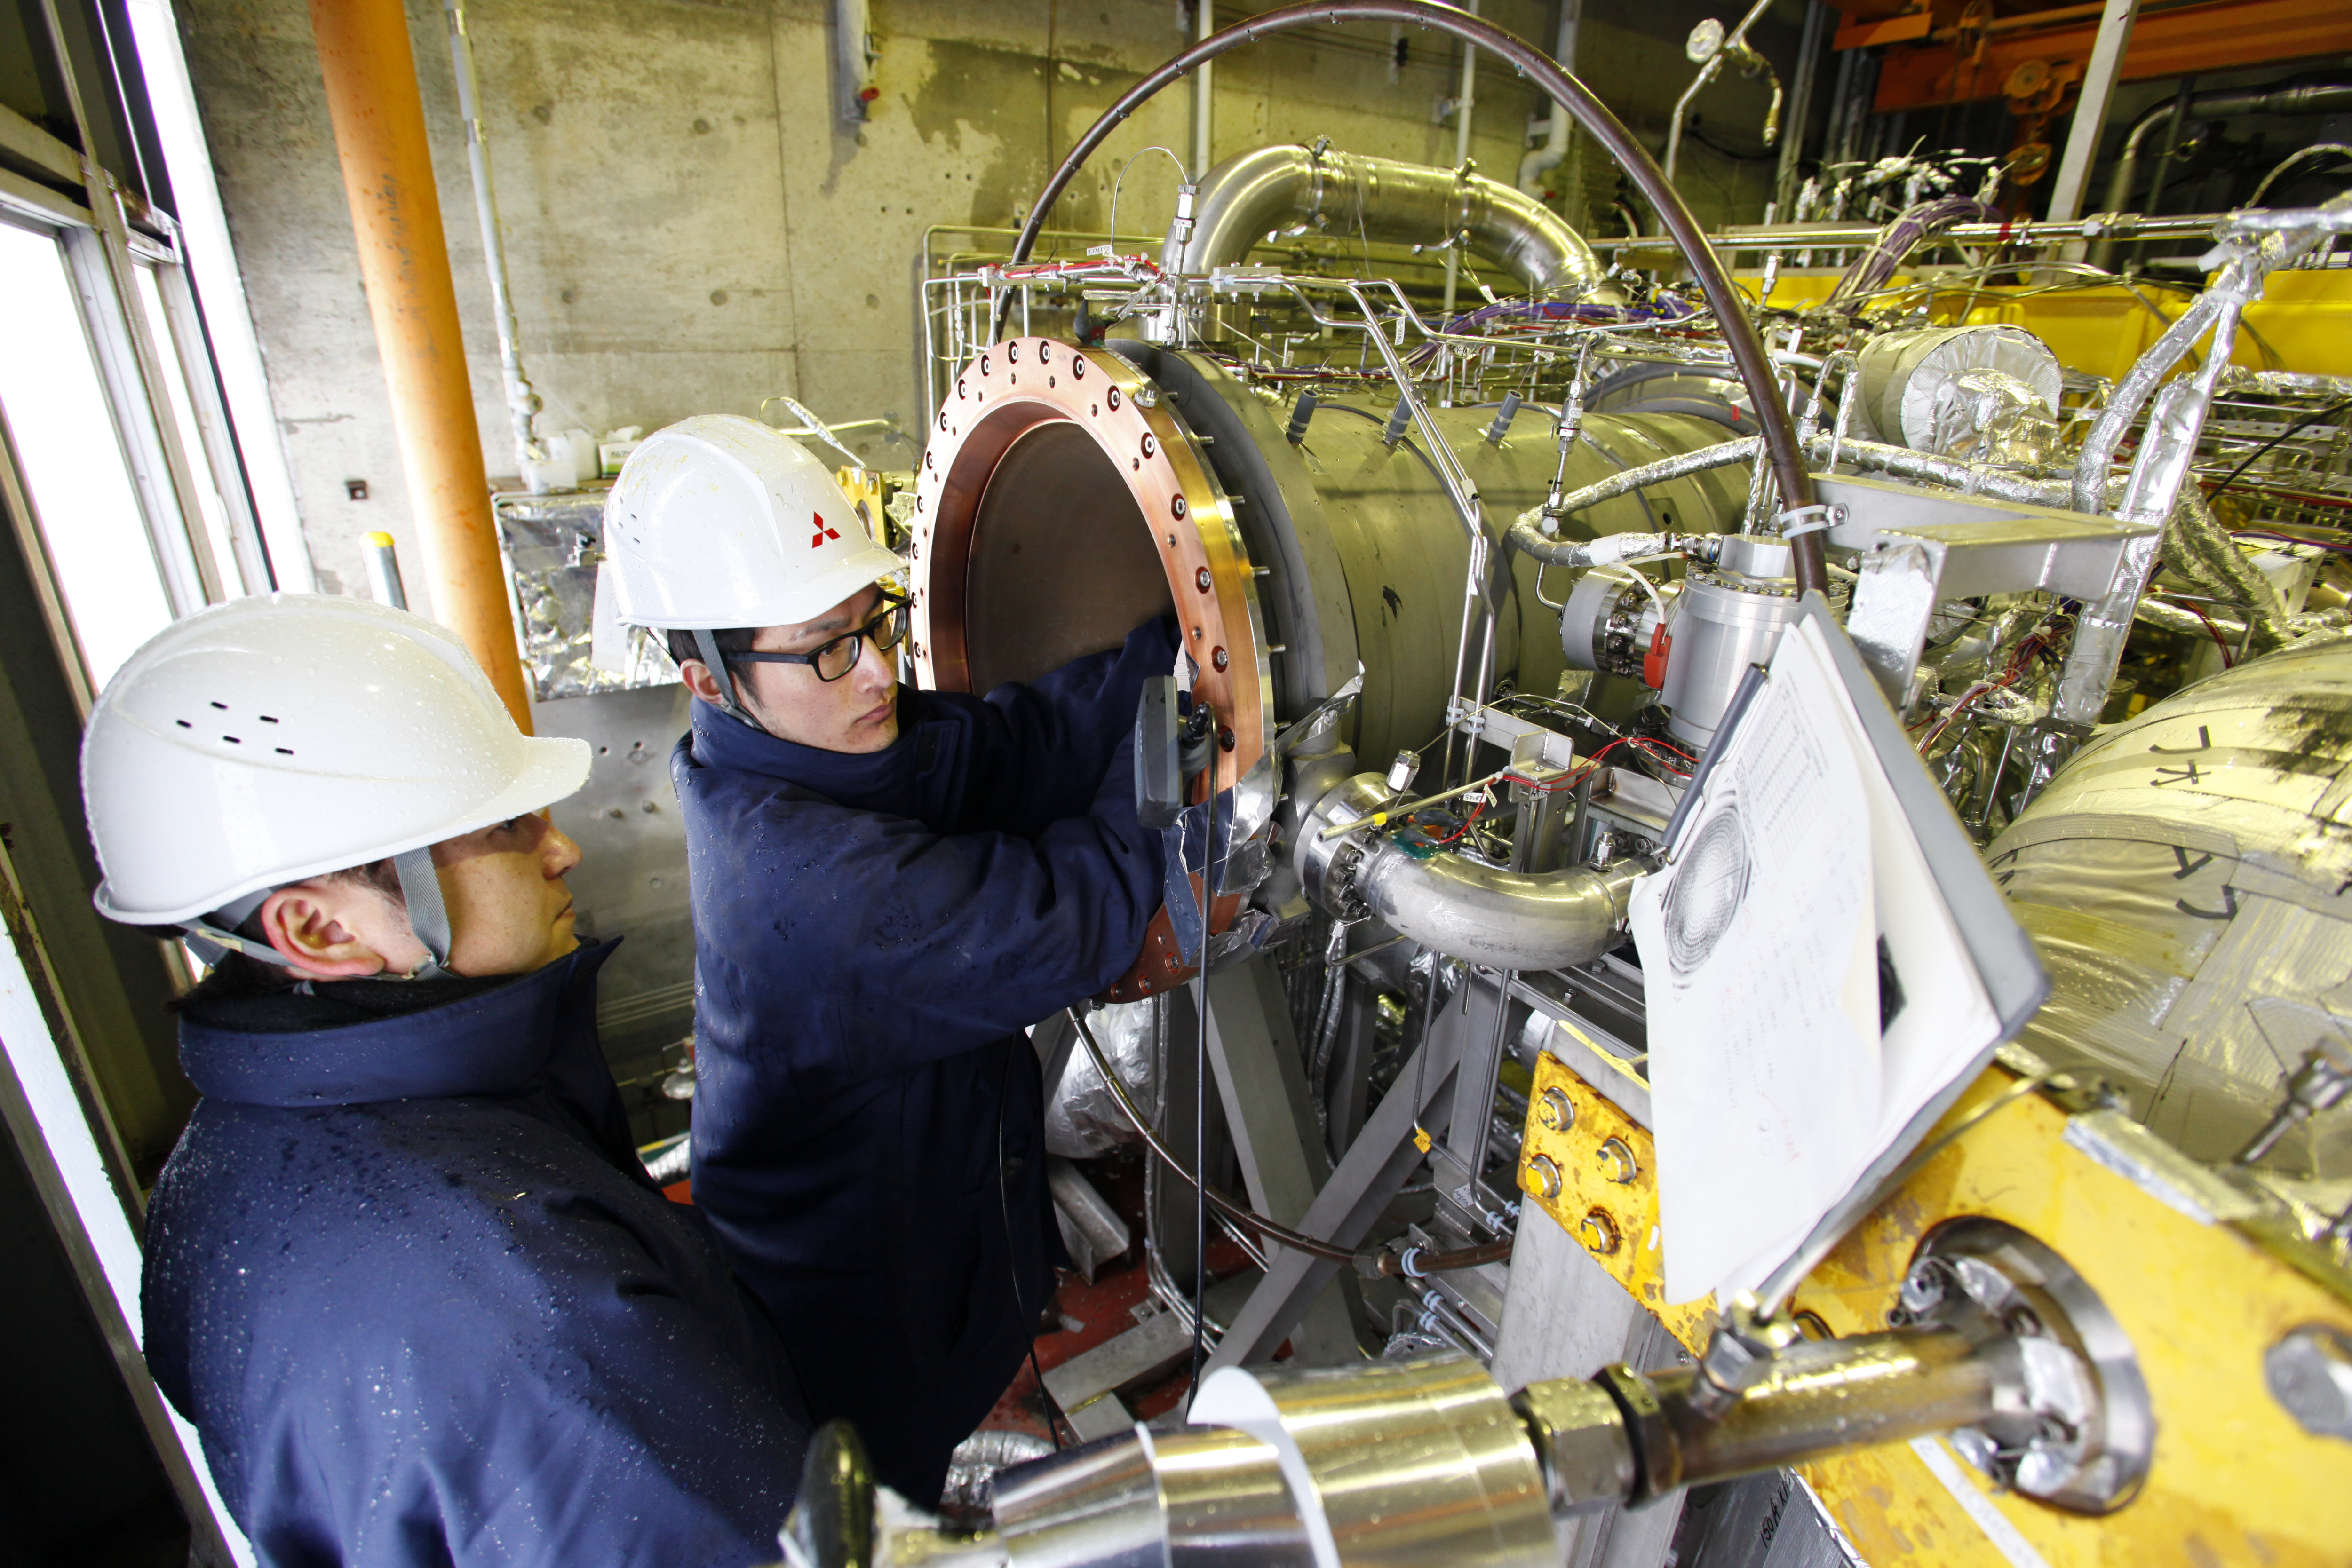 2014/3/17に三菱重工業秋田県田代試験場において実施されたLE-9原型エンジン燃焼器単体短秒時燃焼試験後の供試体の様子。🄫JAXA